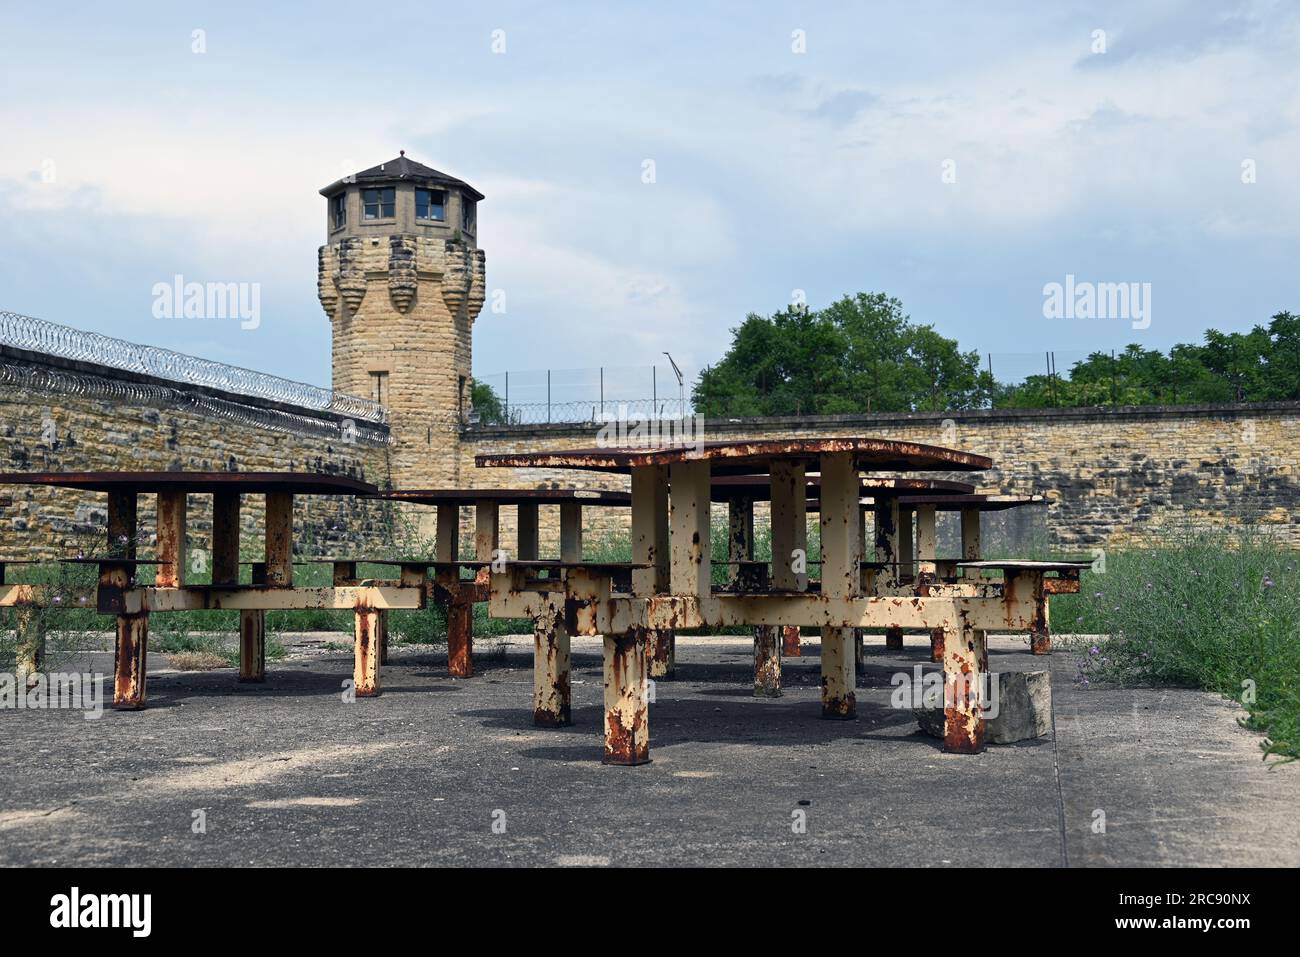 Rostende Gefangenenbänke im Trainingshof des Old Joliet Gefängnisses, das 1858 eröffnet und 2002 geschlossen wurde. Stockfoto